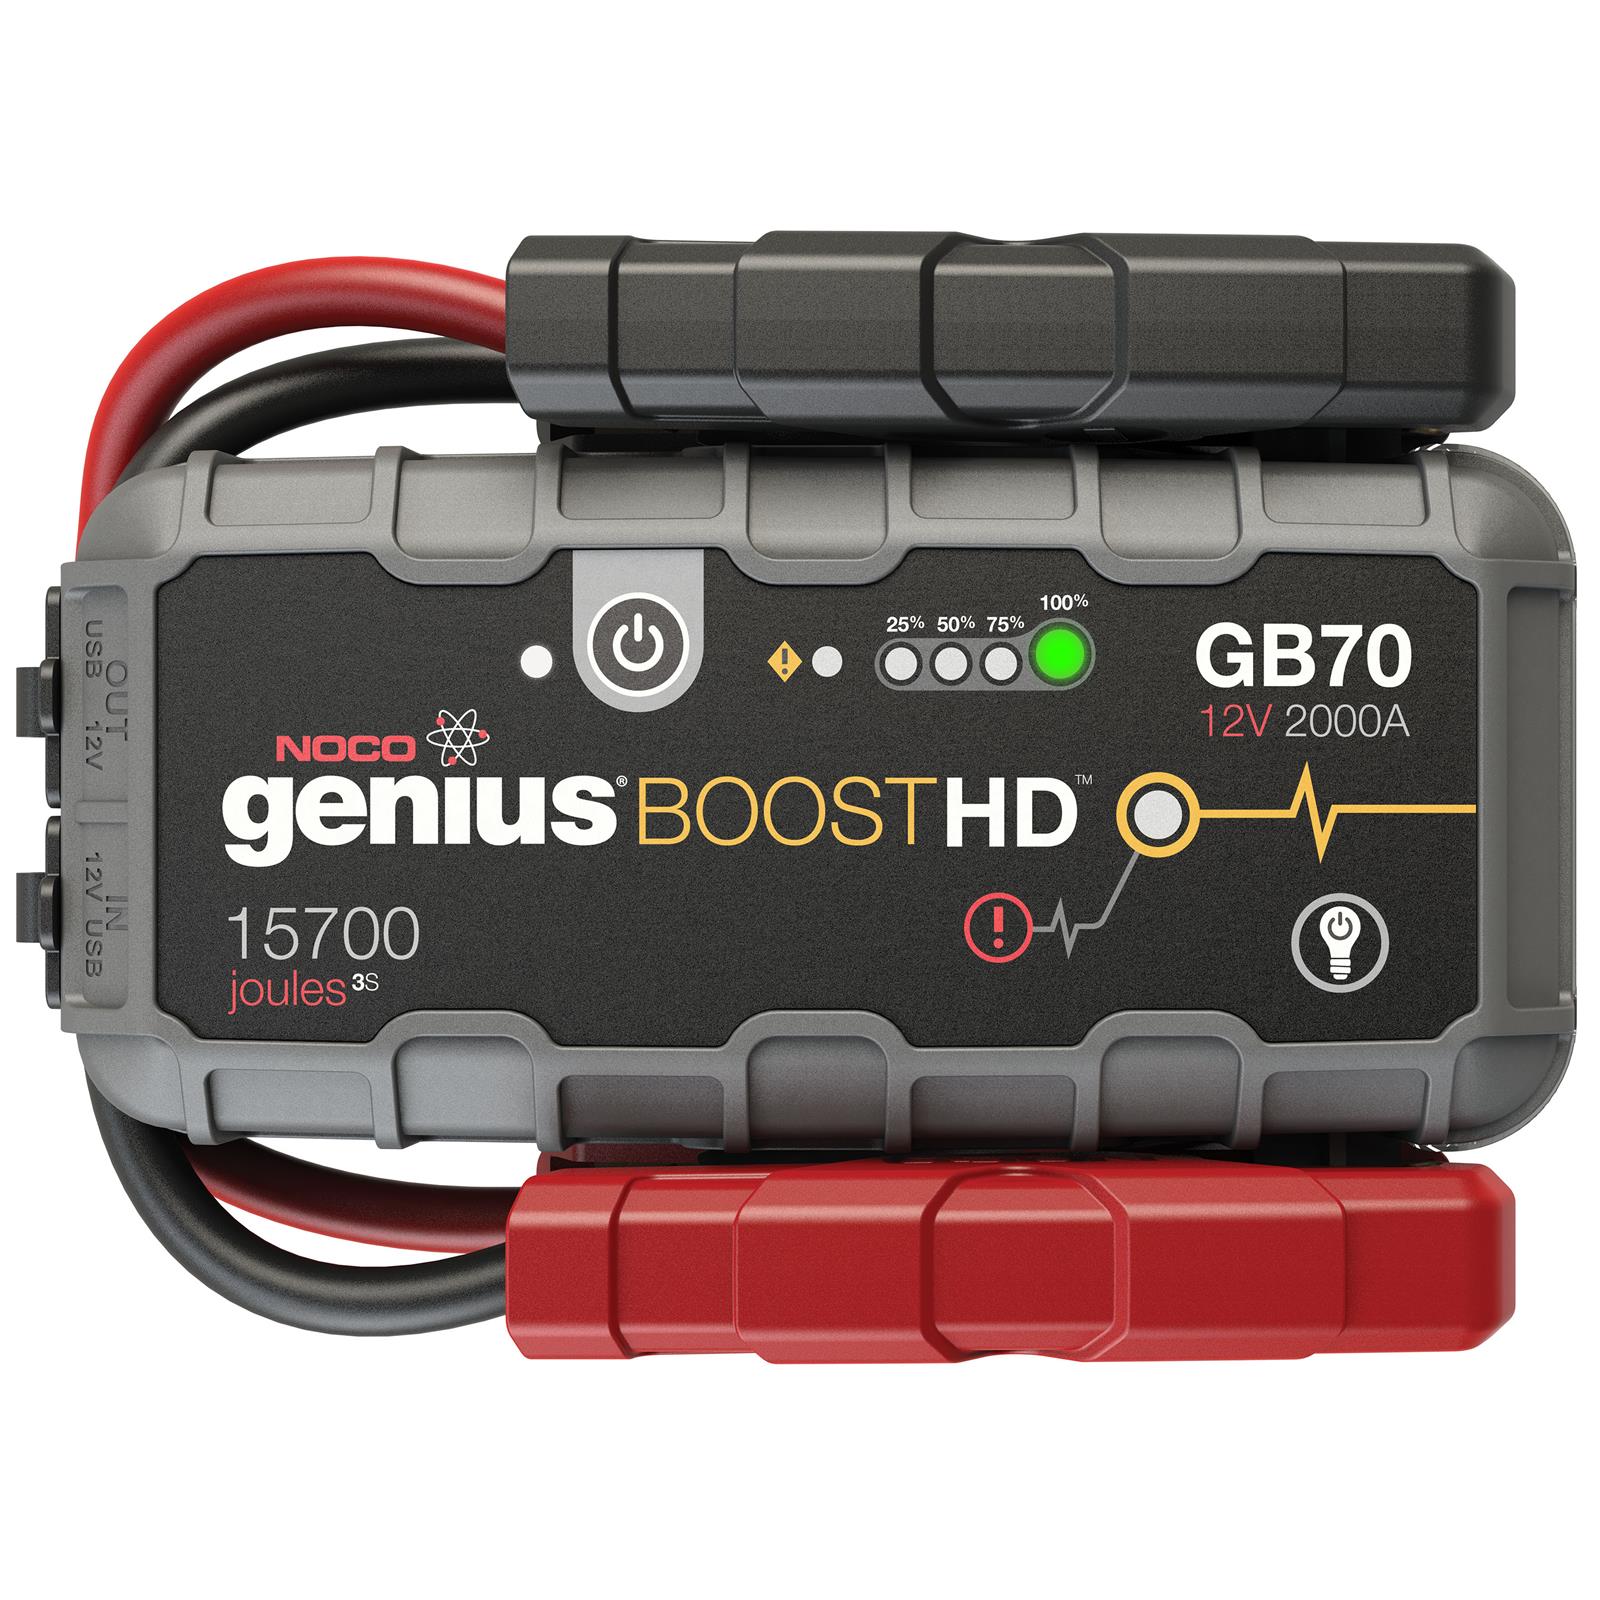 NOCO GB70 NOCO Genius Boost HD Jump Starters